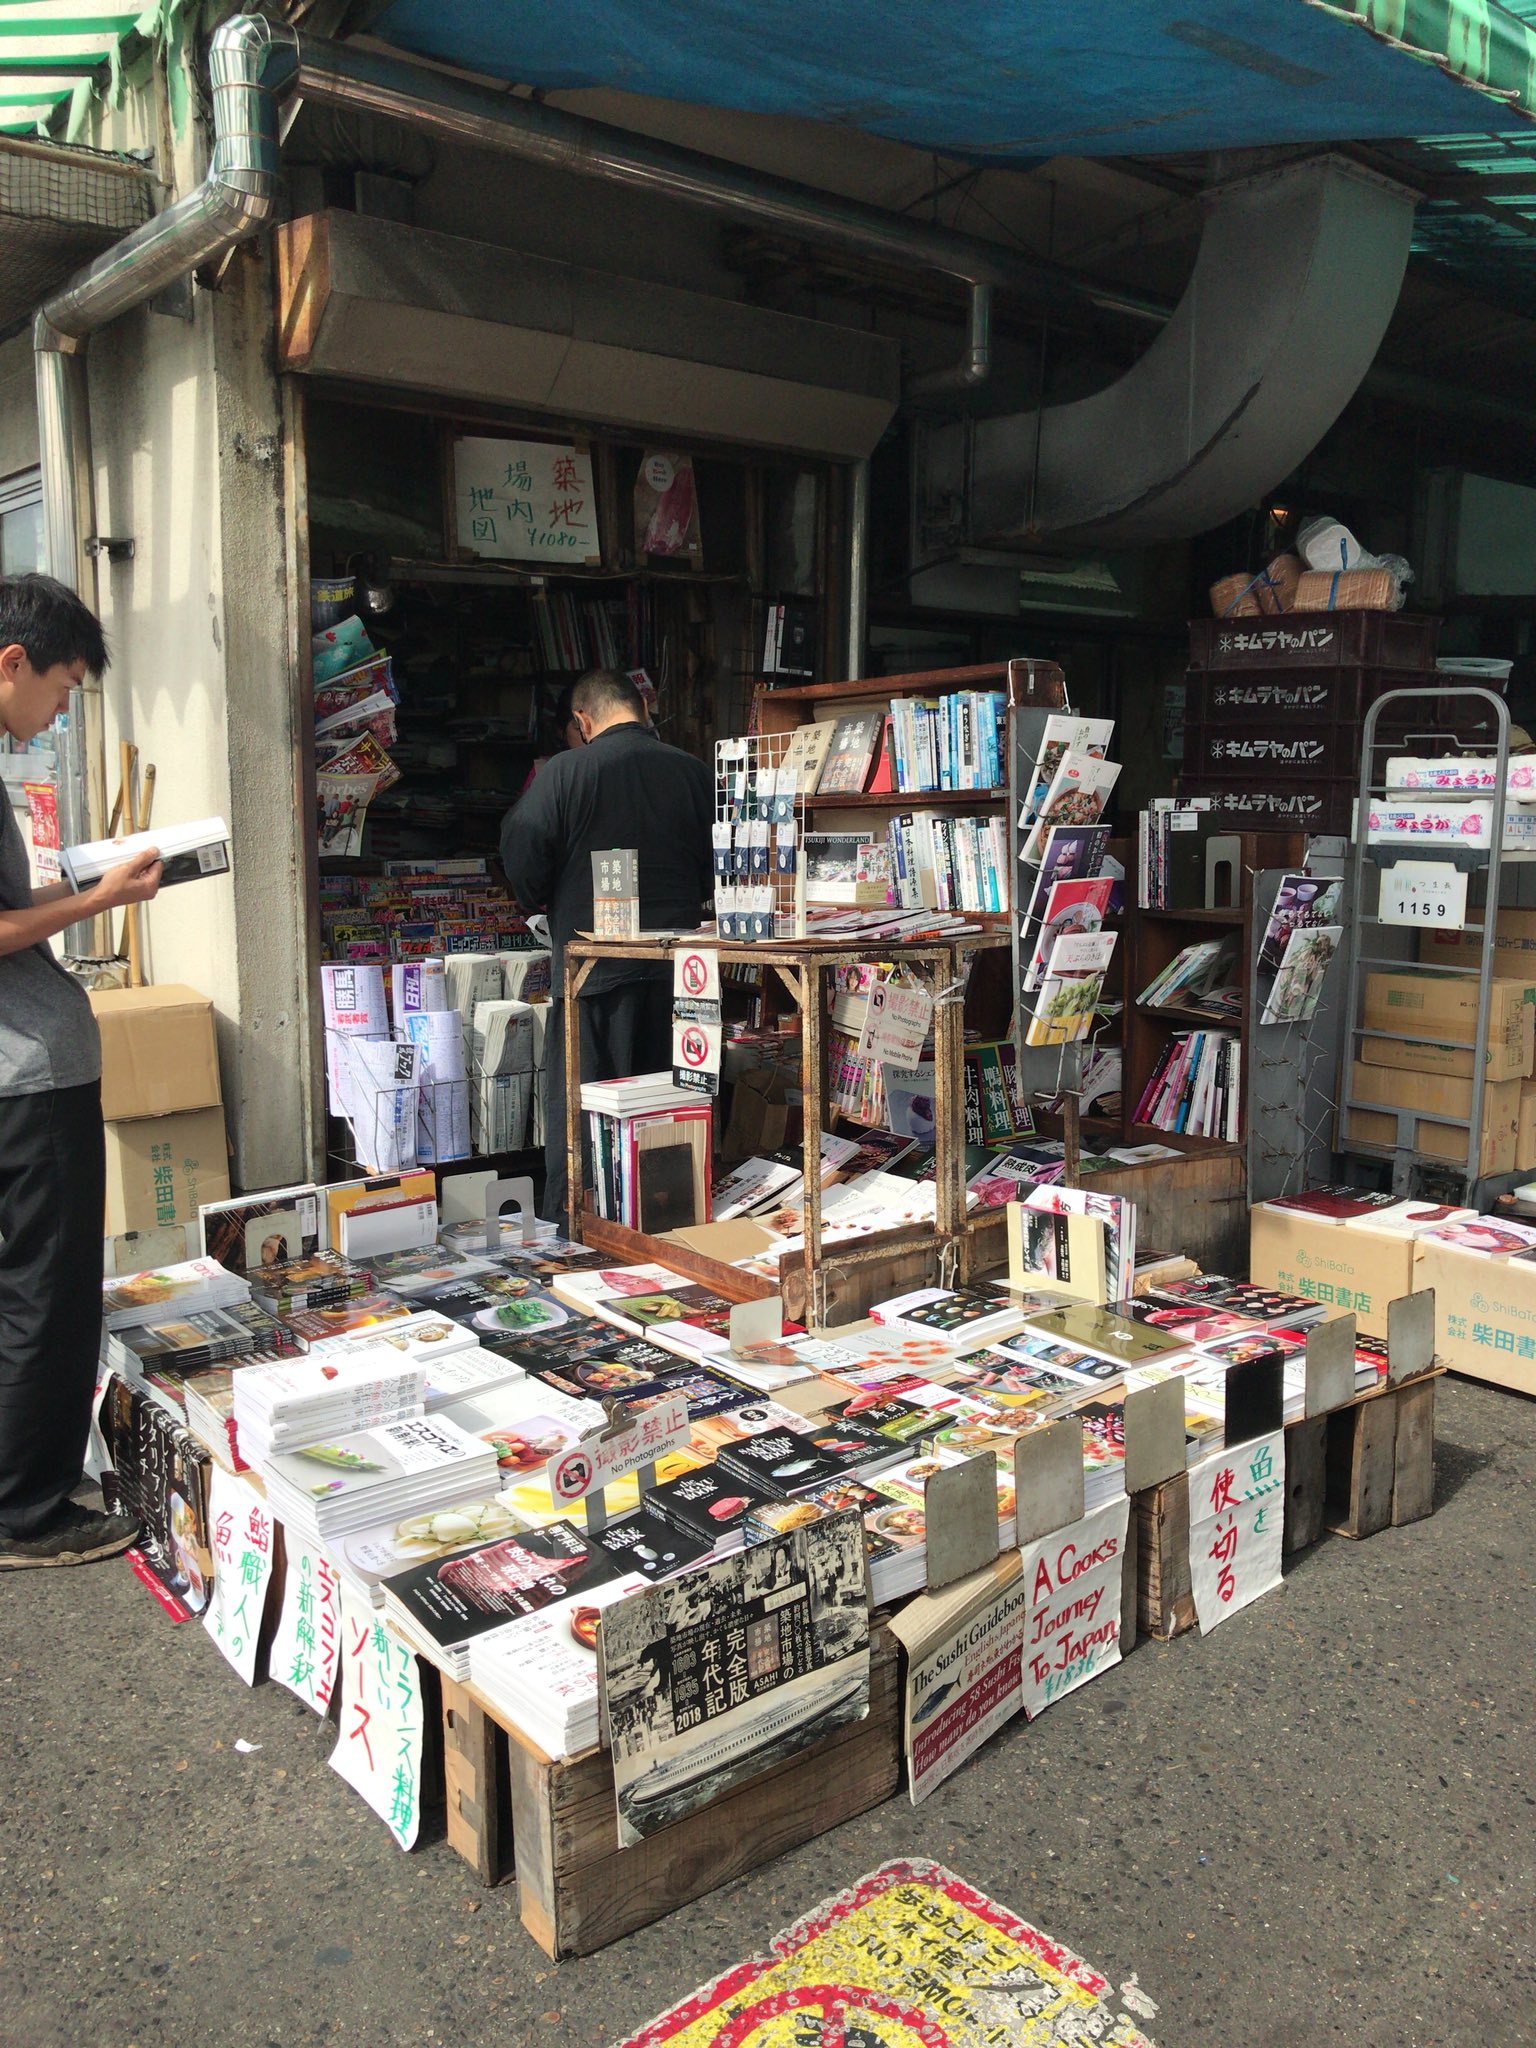 おざわゆき 築地市場内 唯一の書店だった 東京都弘済会 墨田書房 も 移転とともに閉店してしまいます このお店には大変お世話なりました 築地あるき がまだ0円の薄い同人誌だった事から店頭に置いてくださり その後ビニールカバーやオリジナルの